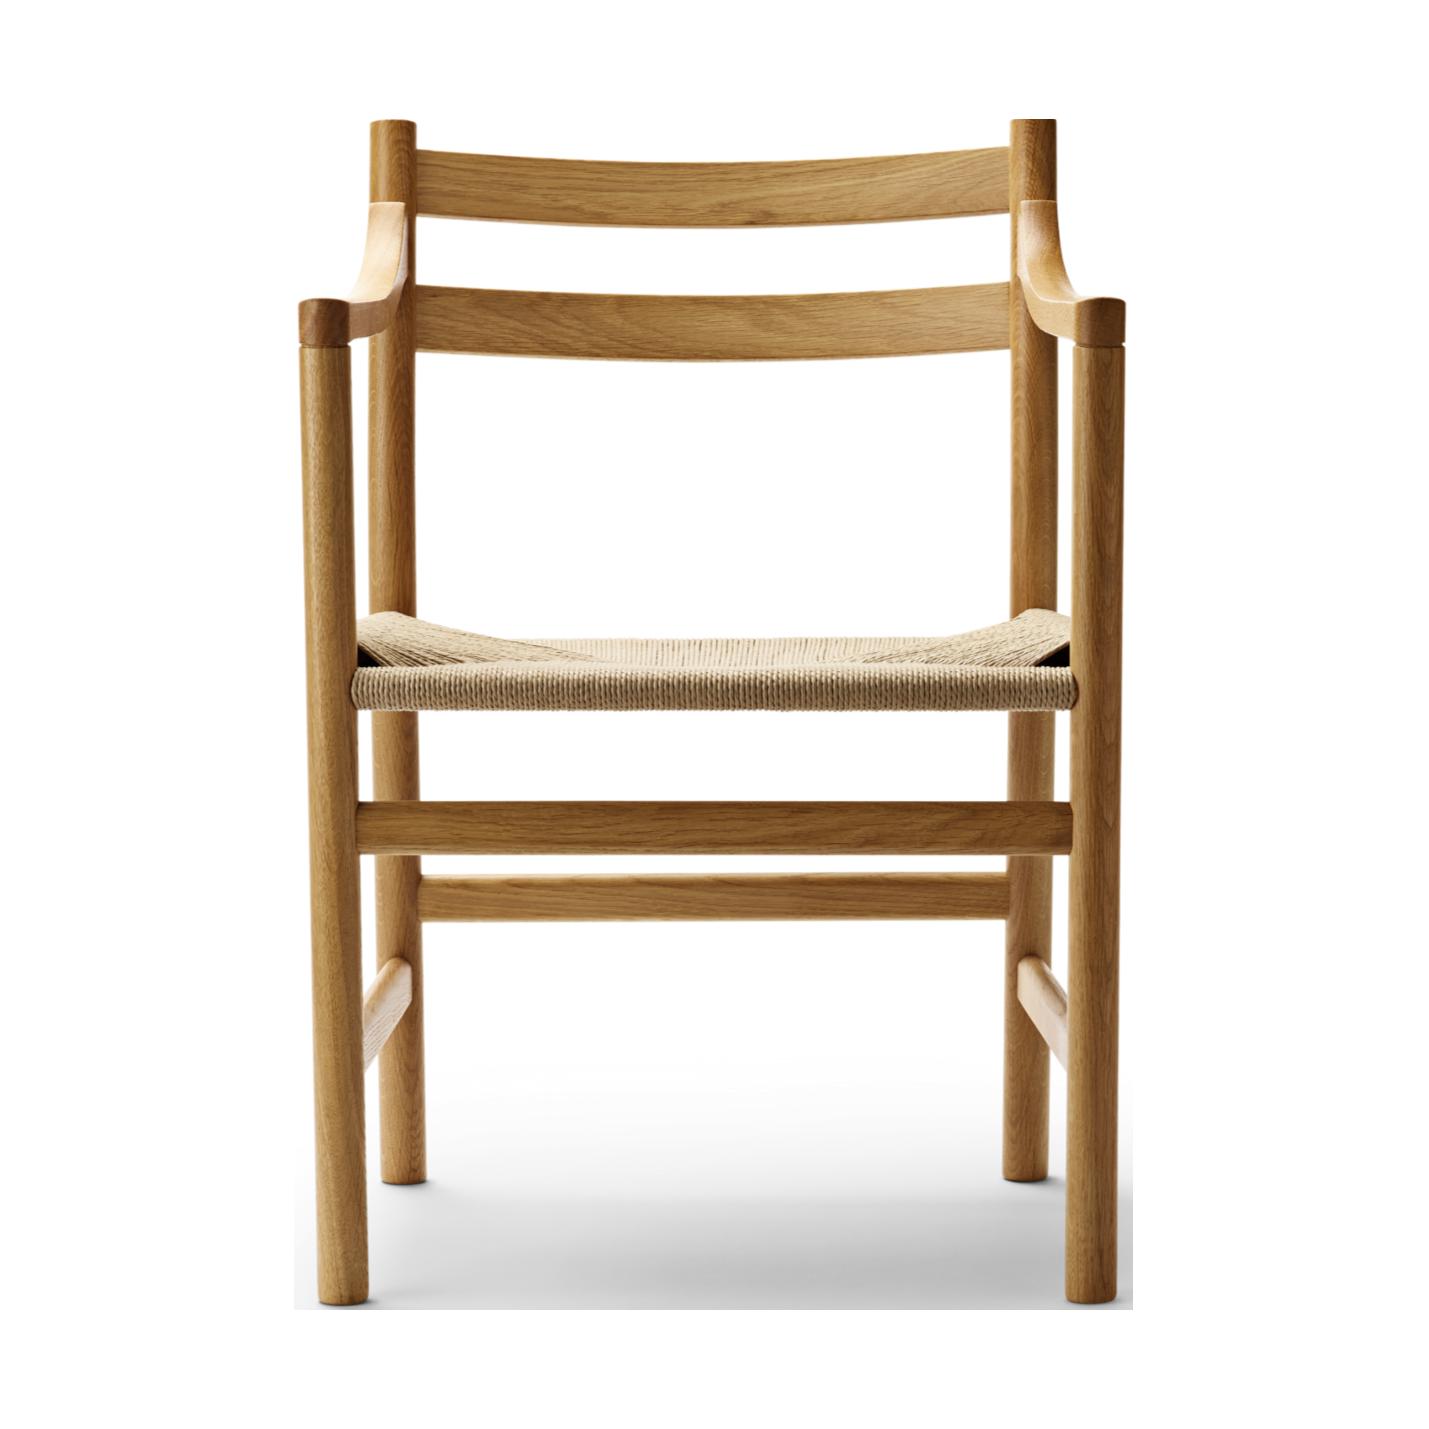 Carl Hansen CH46 -stol, oljad ek/naturlig